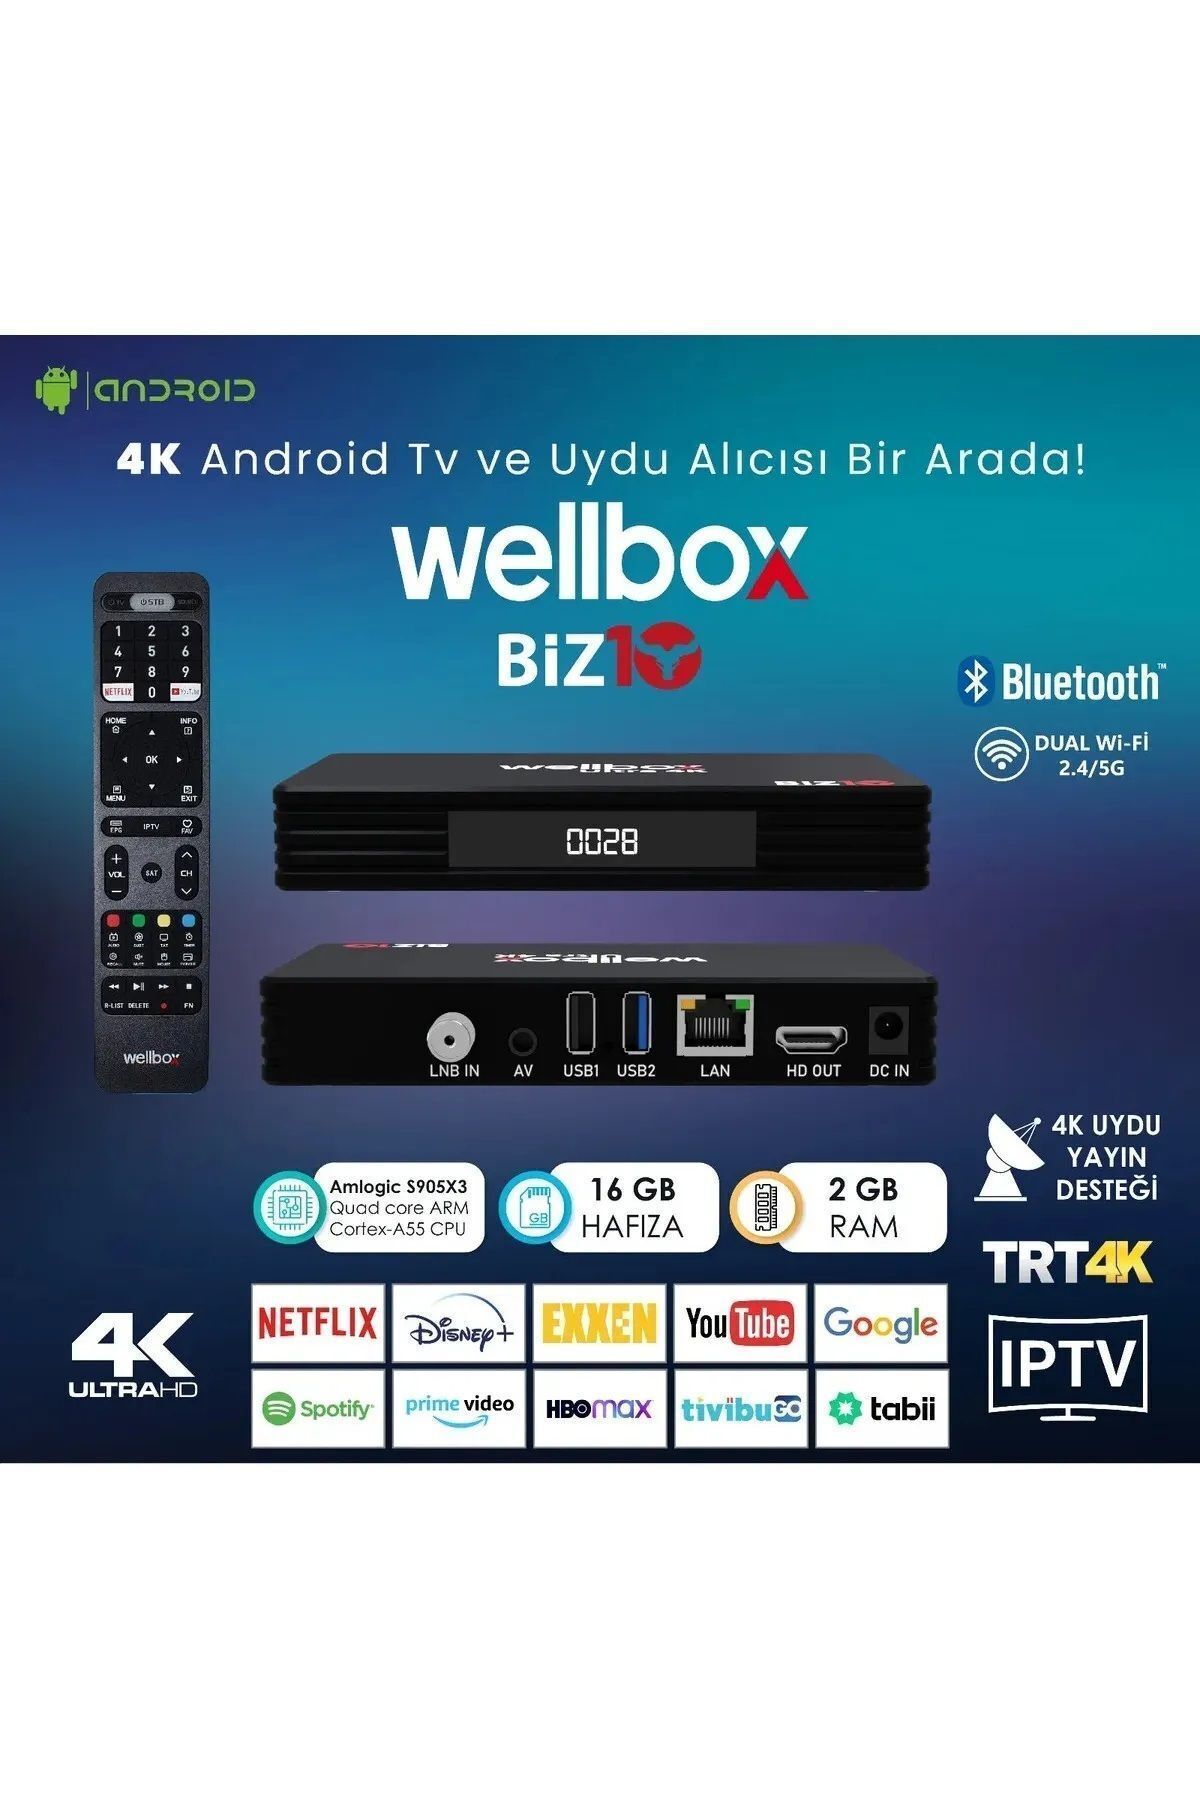 wellbox Biz10 4k Android Tv Box Uydu Alıcısı